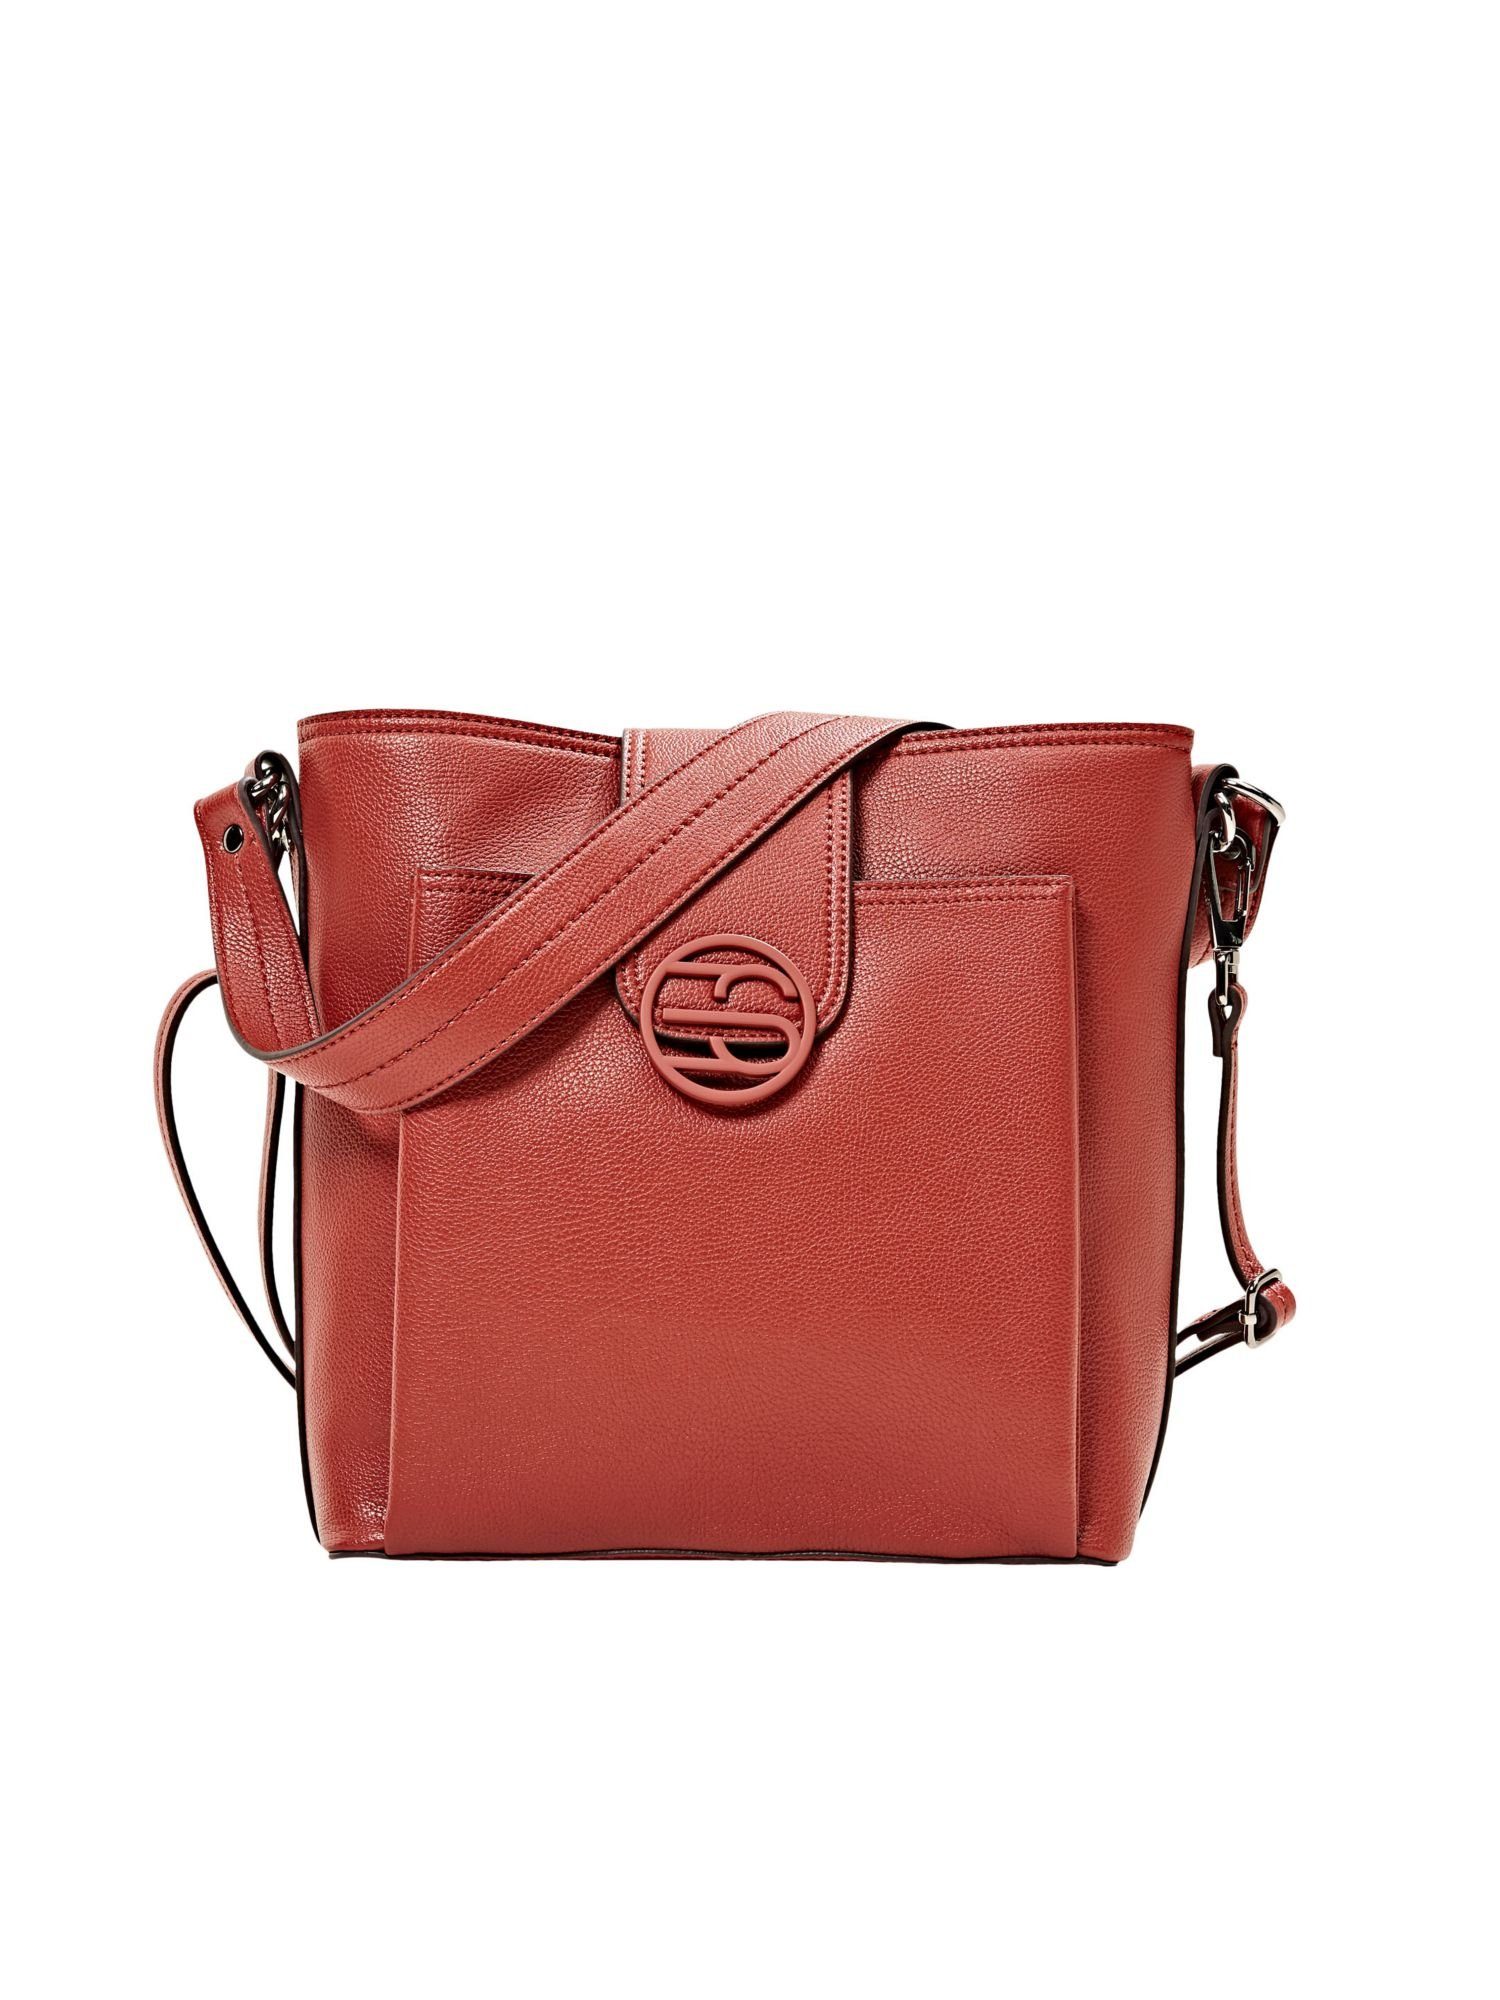 Esprit Handtaschen online kaufen | OTTO